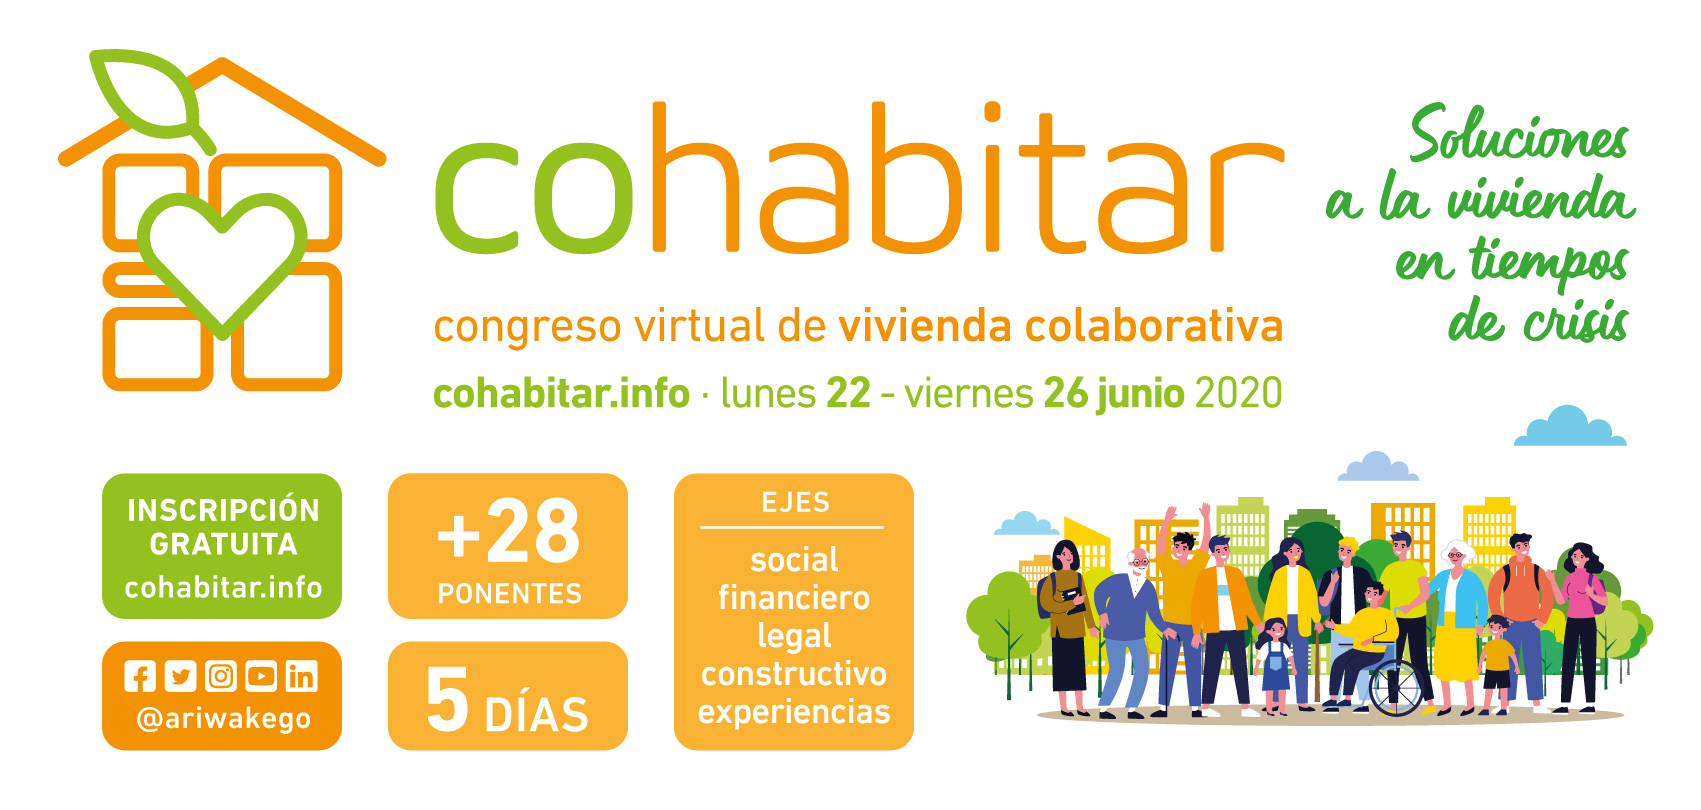 Congreso virtual de vivienda colaborativa  #COHABITAR